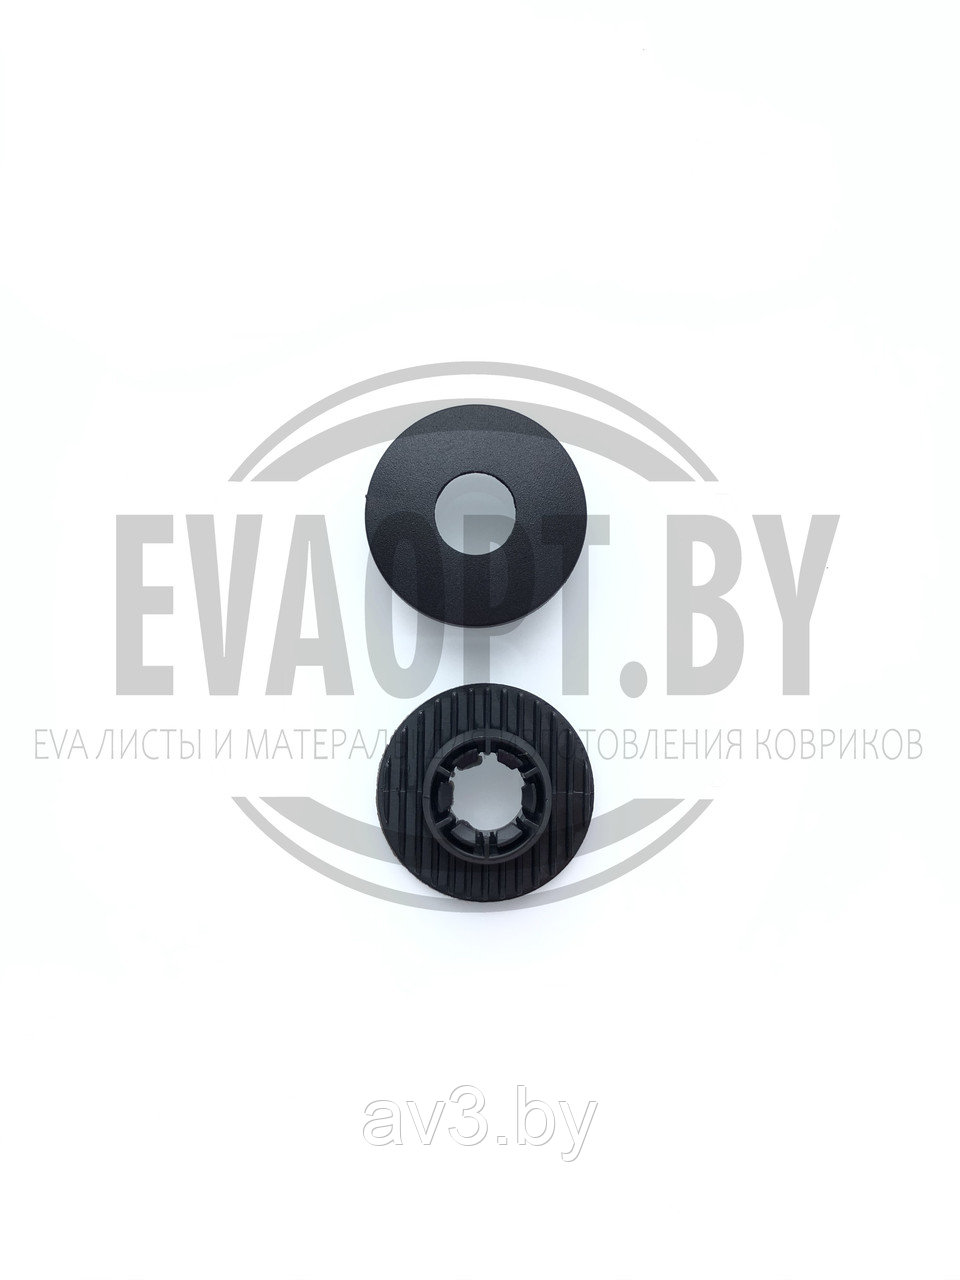 Крепление ковриков VLV (Volvo, Mazda) для установки на EVA ковриках